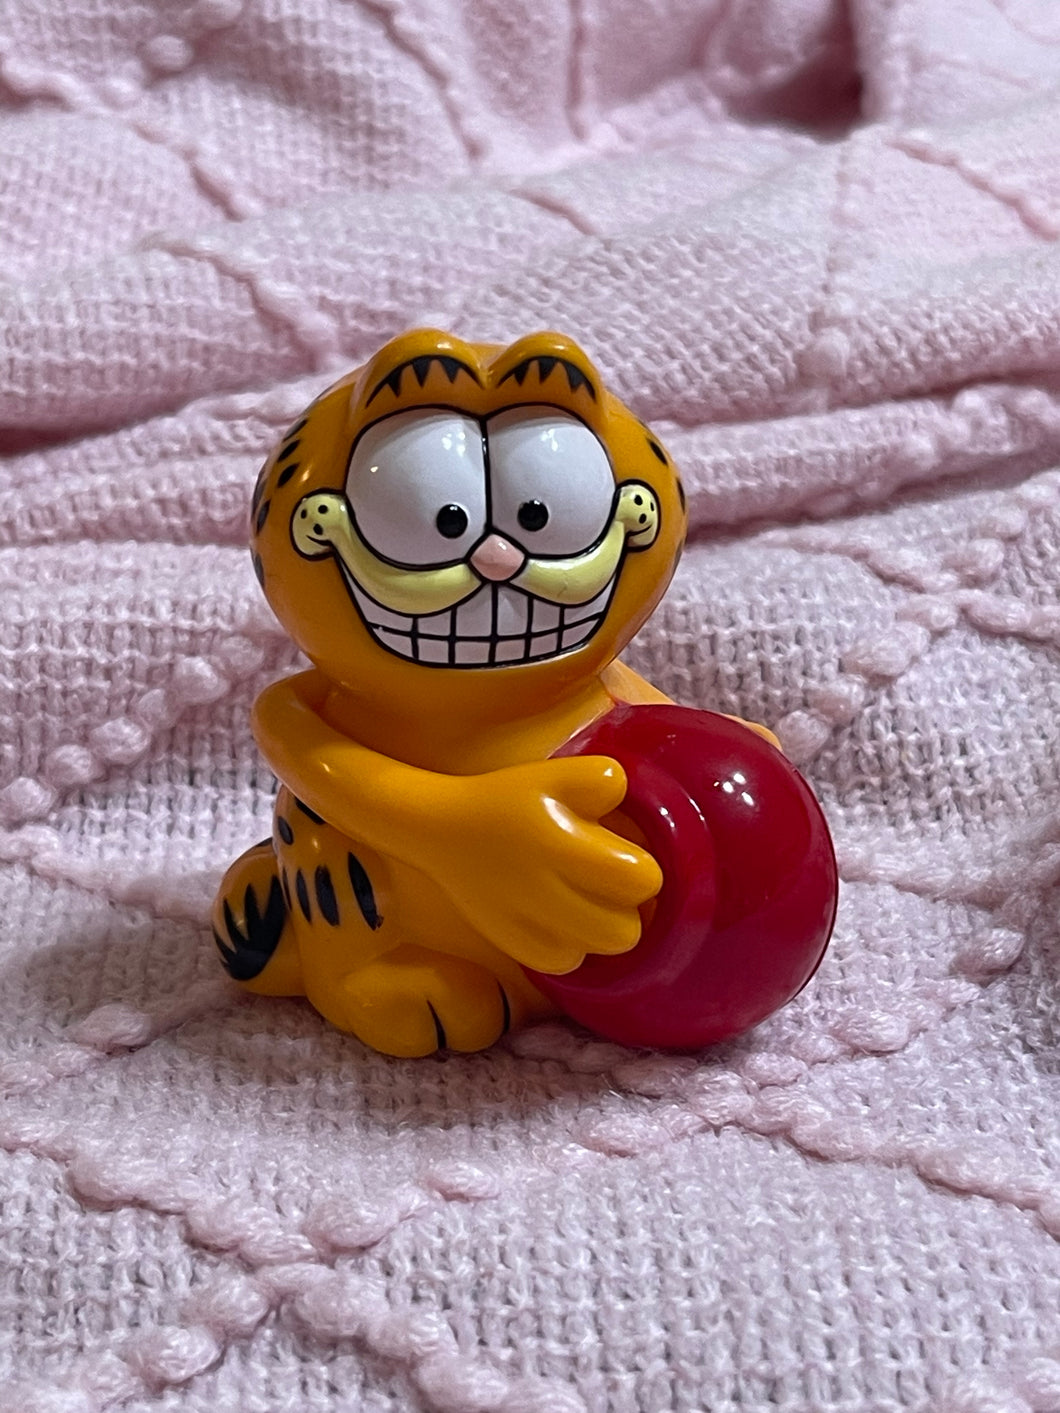 3” tall Garfield plastic toy